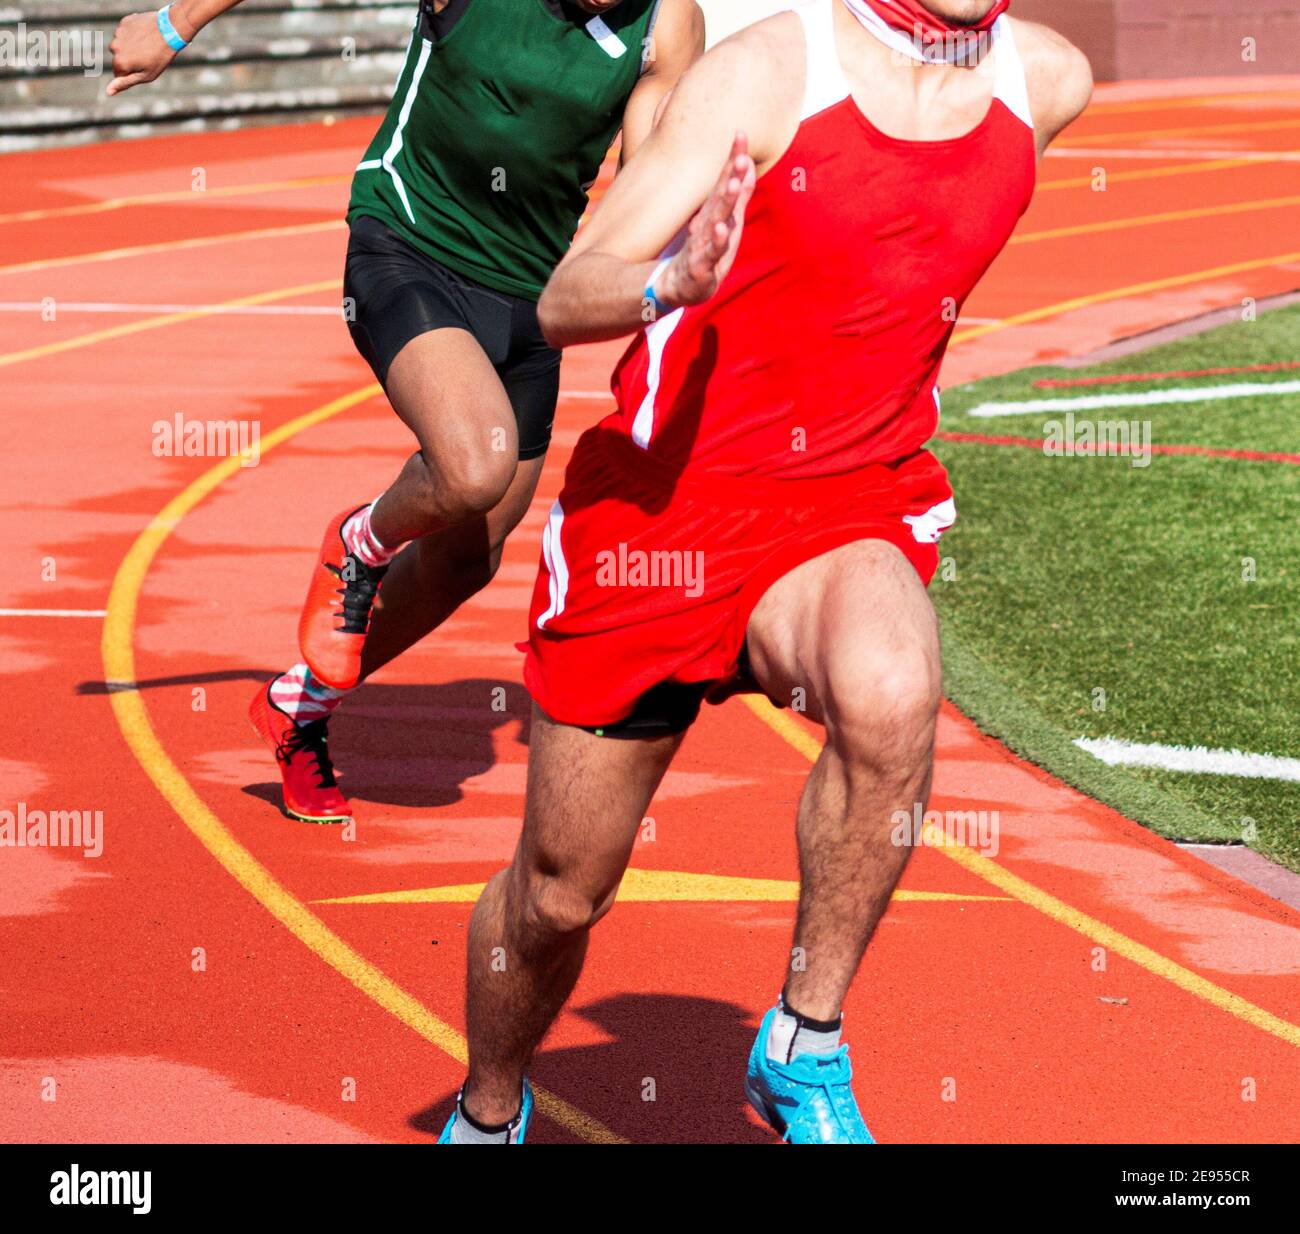 Deux garçons du secondaire qui se disputent une course de sprint sur une piste en plein air. Banque D'Images